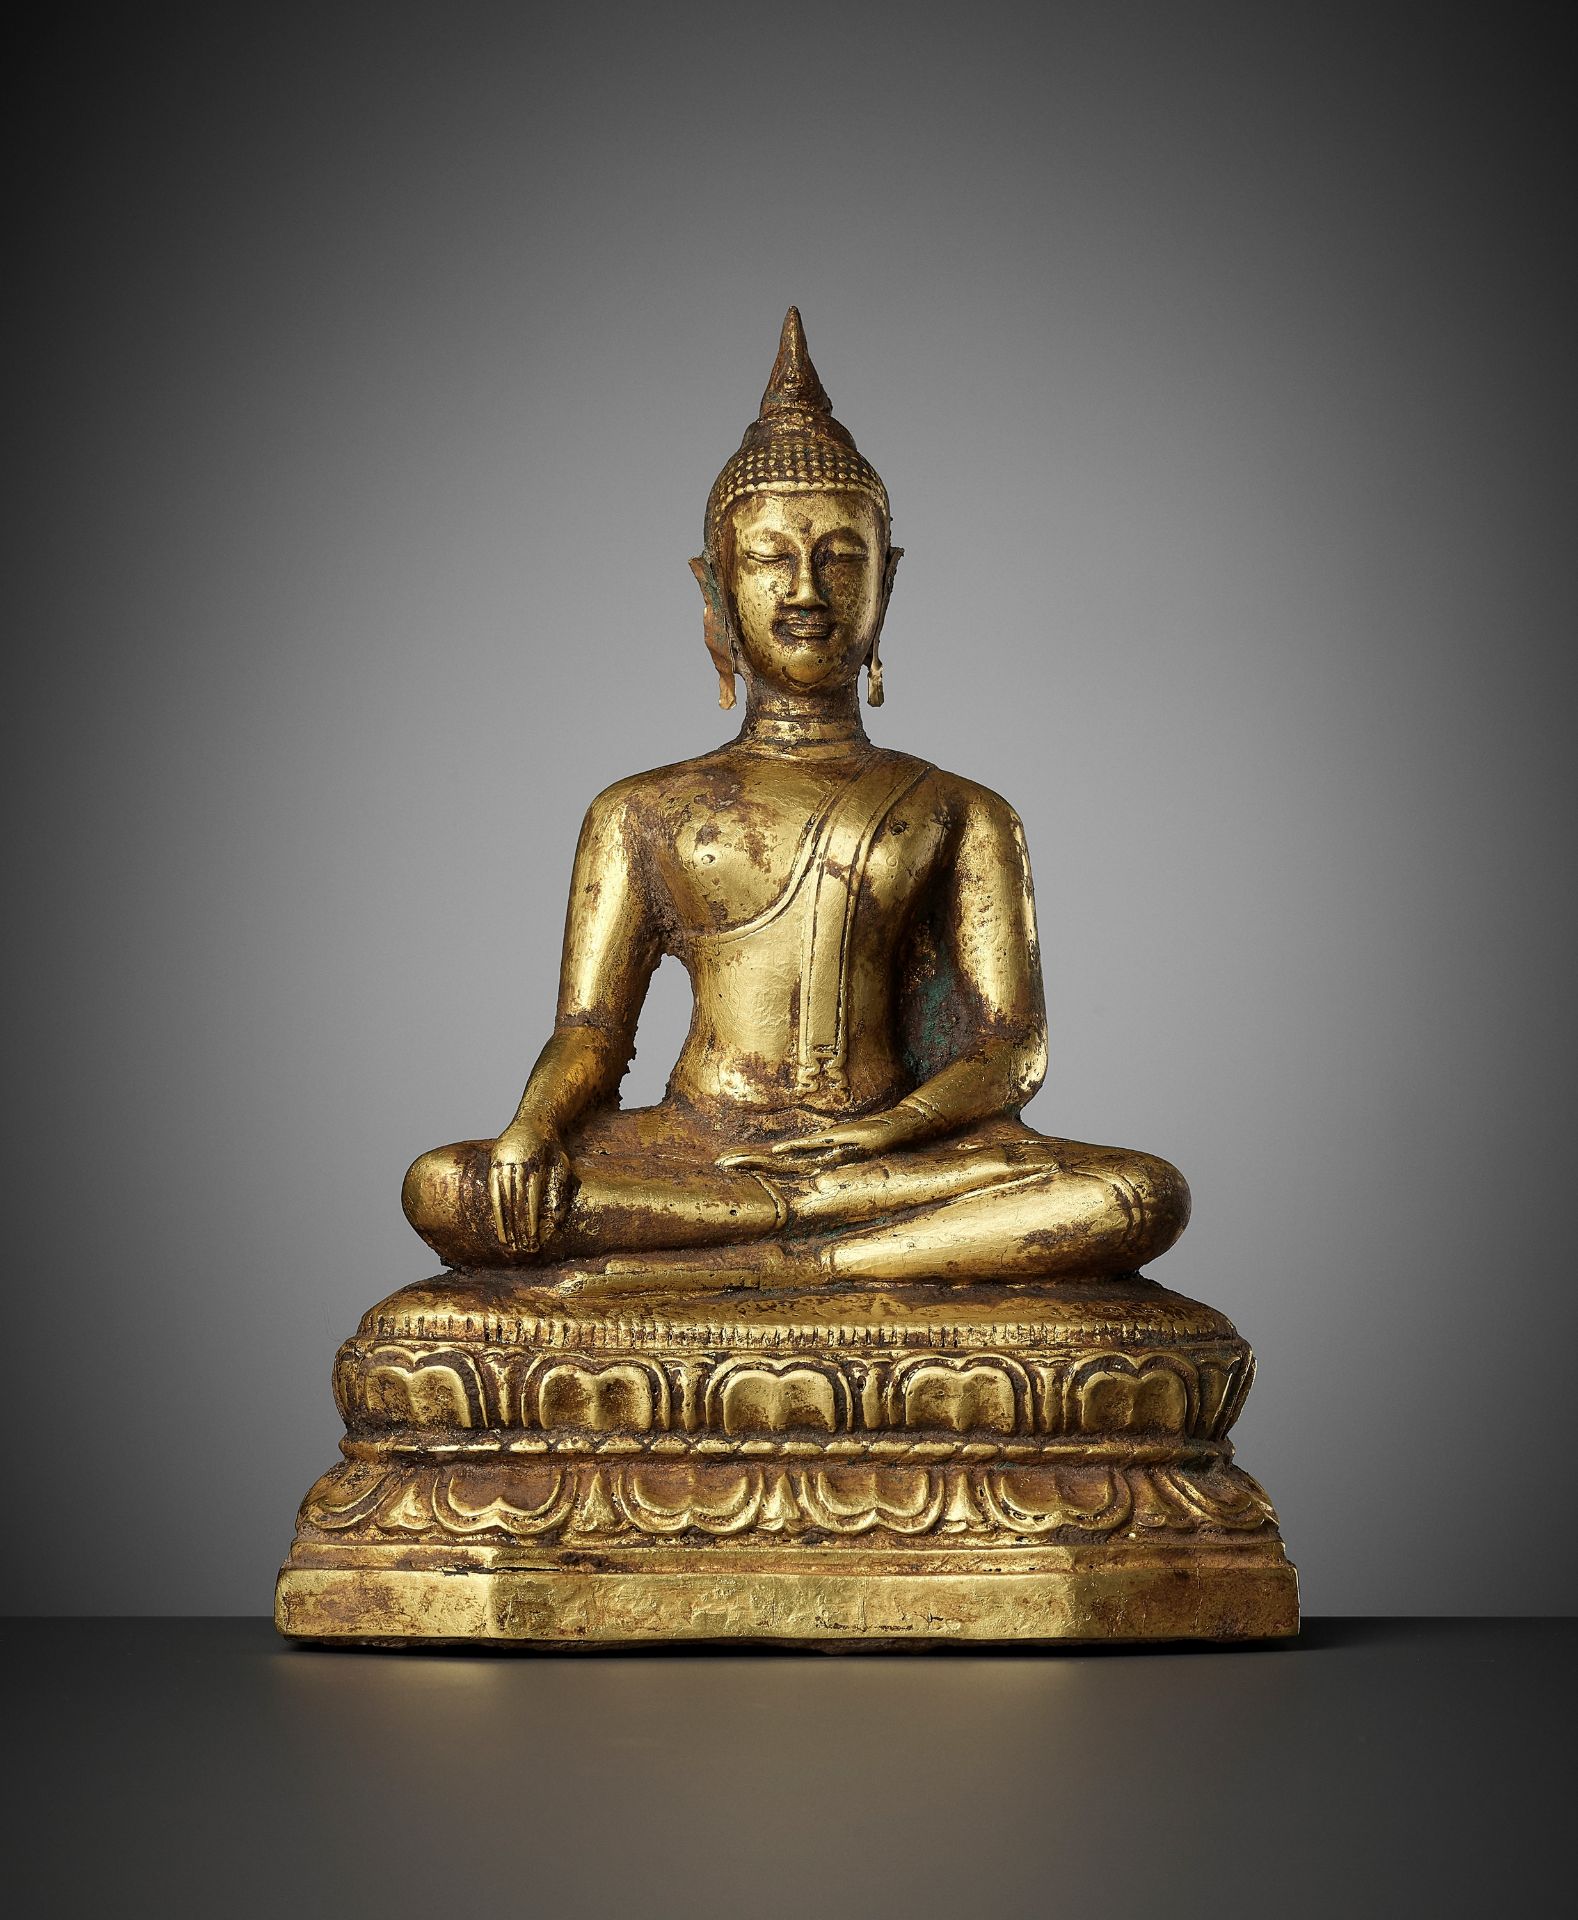 A GOLD REPOUSSE FIGURE OF BUDDHA SHAKYAMUNI, AYUTTHAYA KINGDOM, 1351-1767